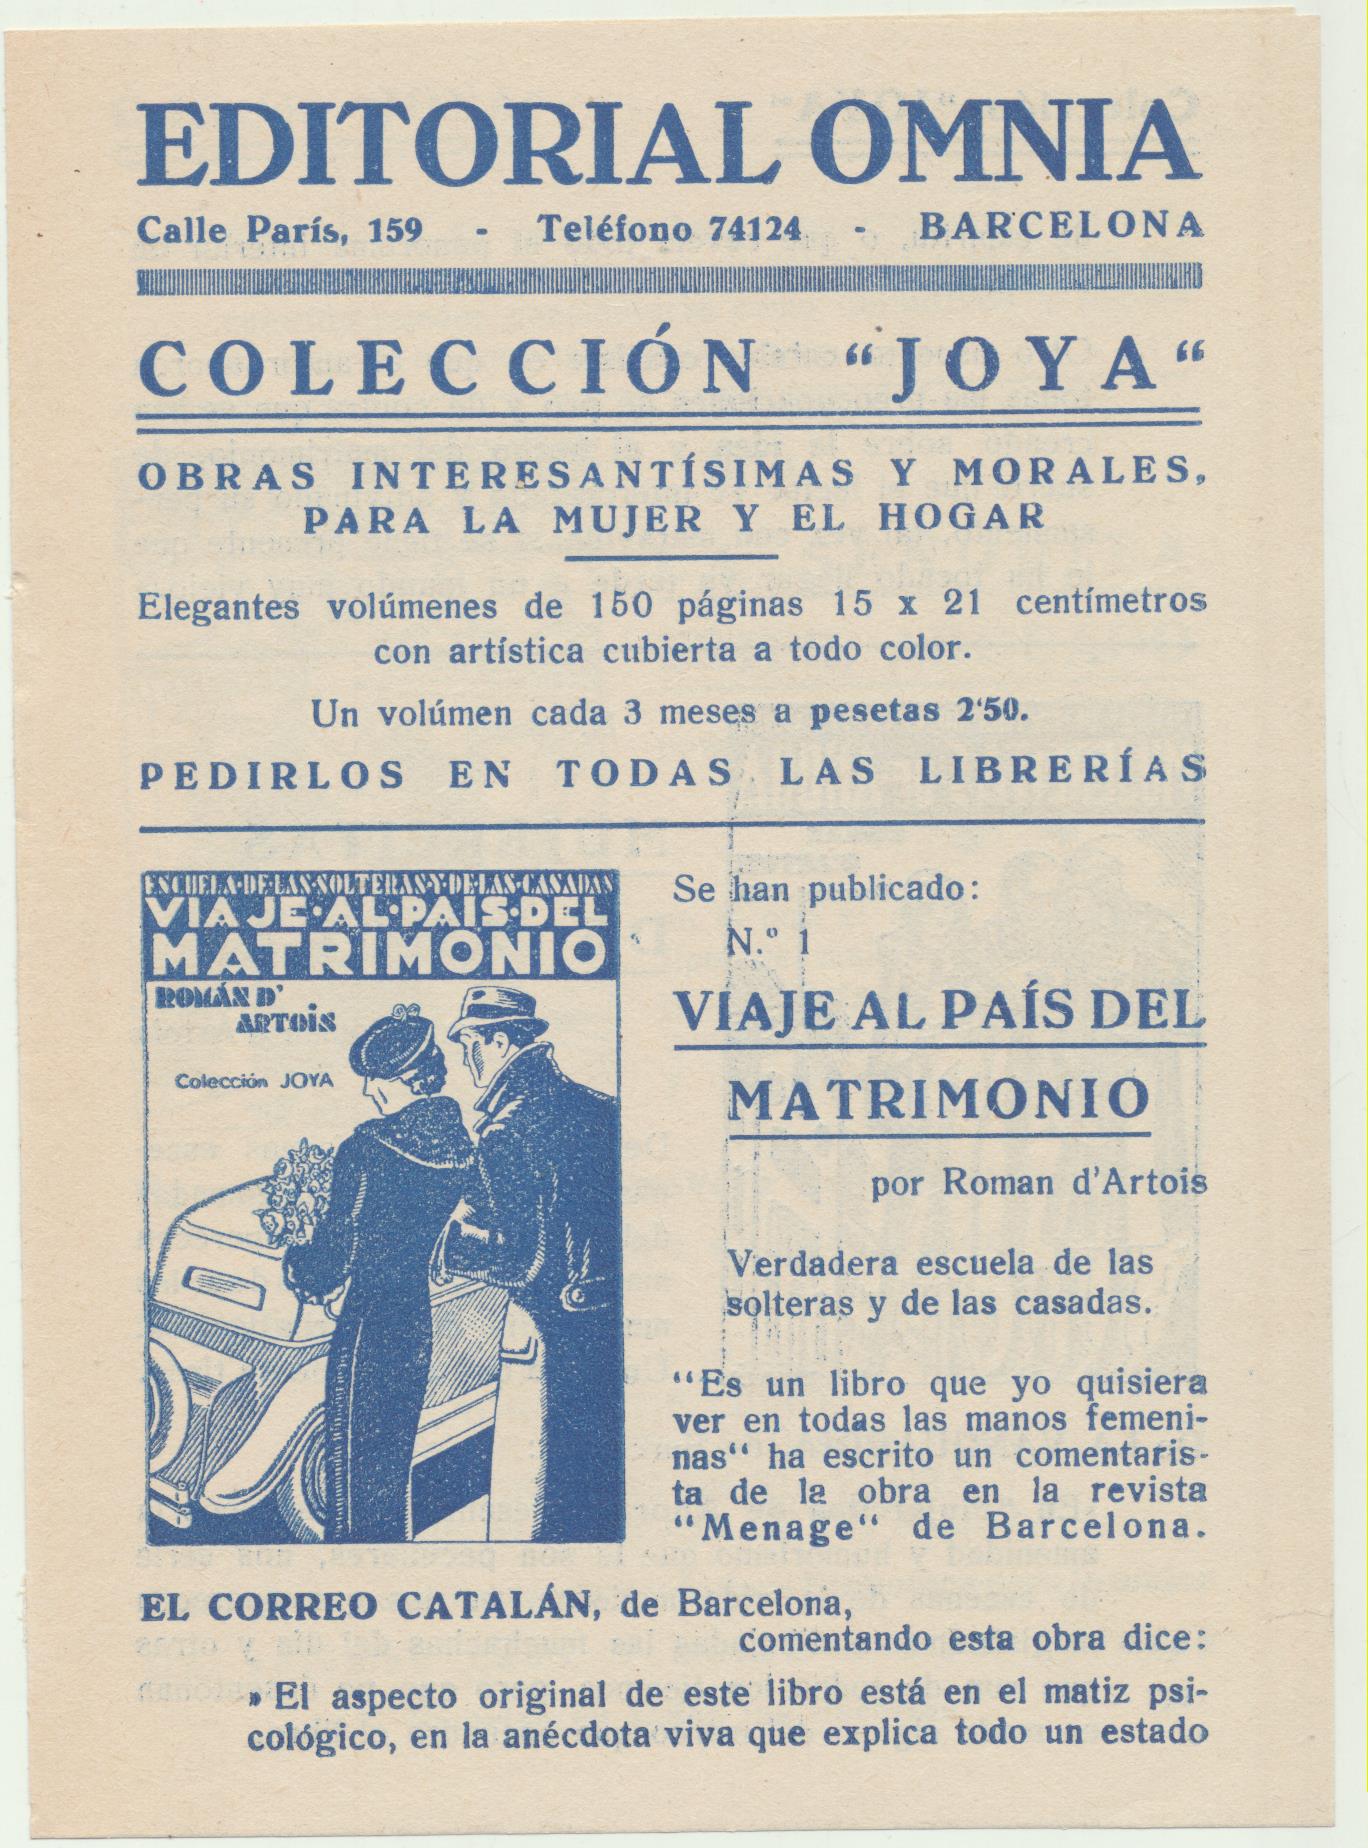 Editorial Omnia. Folleto publicitario (15,5x11) doble hoja. Publicidad de ejemplares de la COlécción Joya. Año 1935